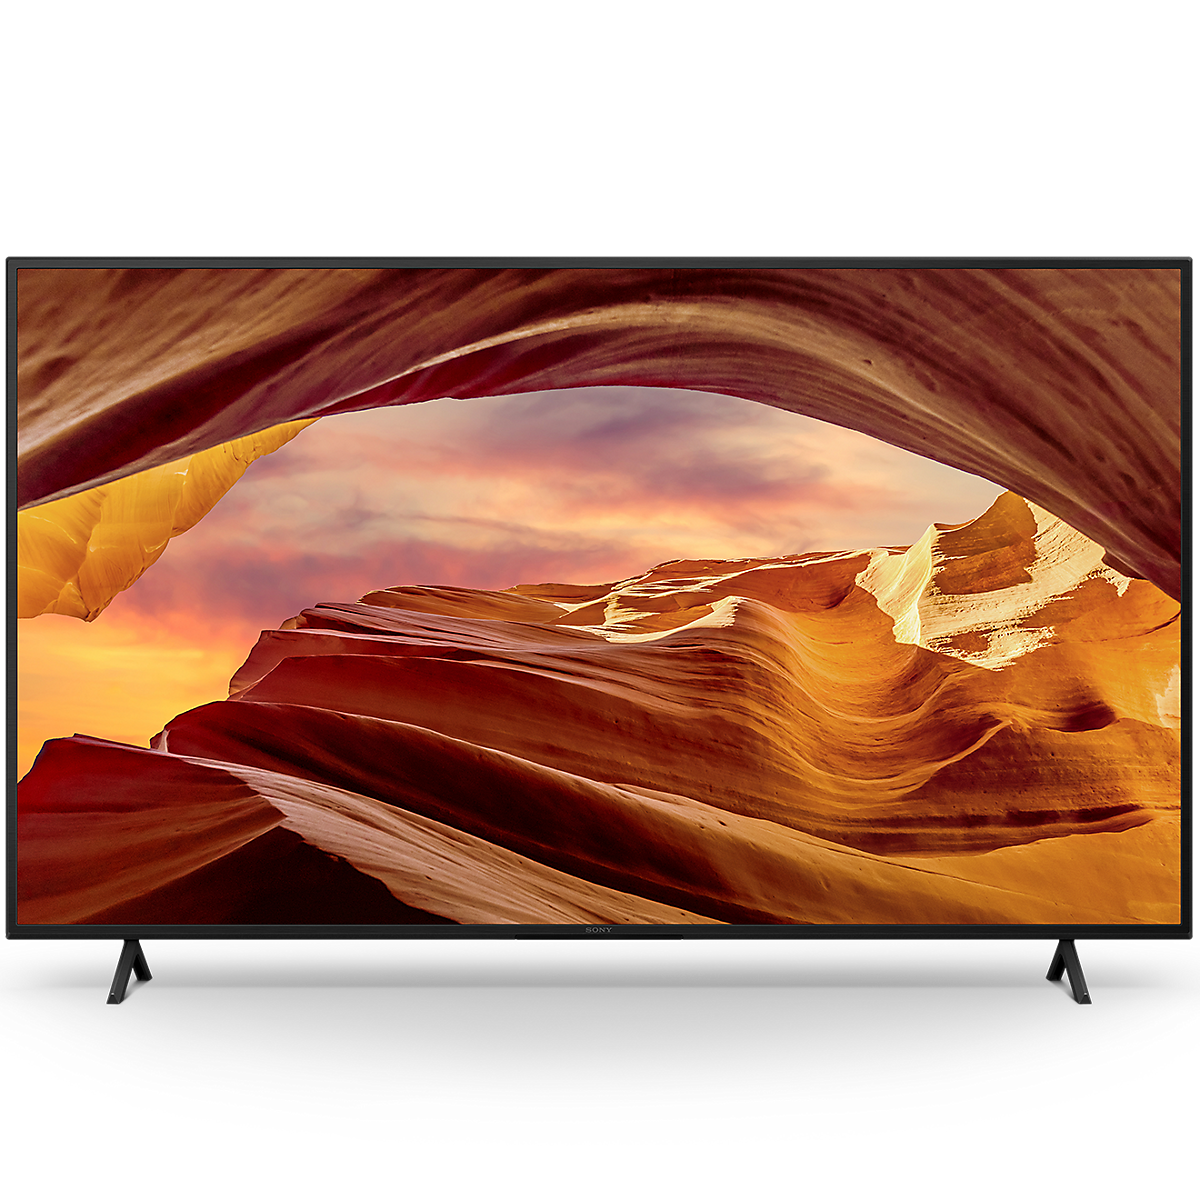 Зображення інтелектуального телевізора (Google TV) 4K Ultra HD X75WL, вид спереду